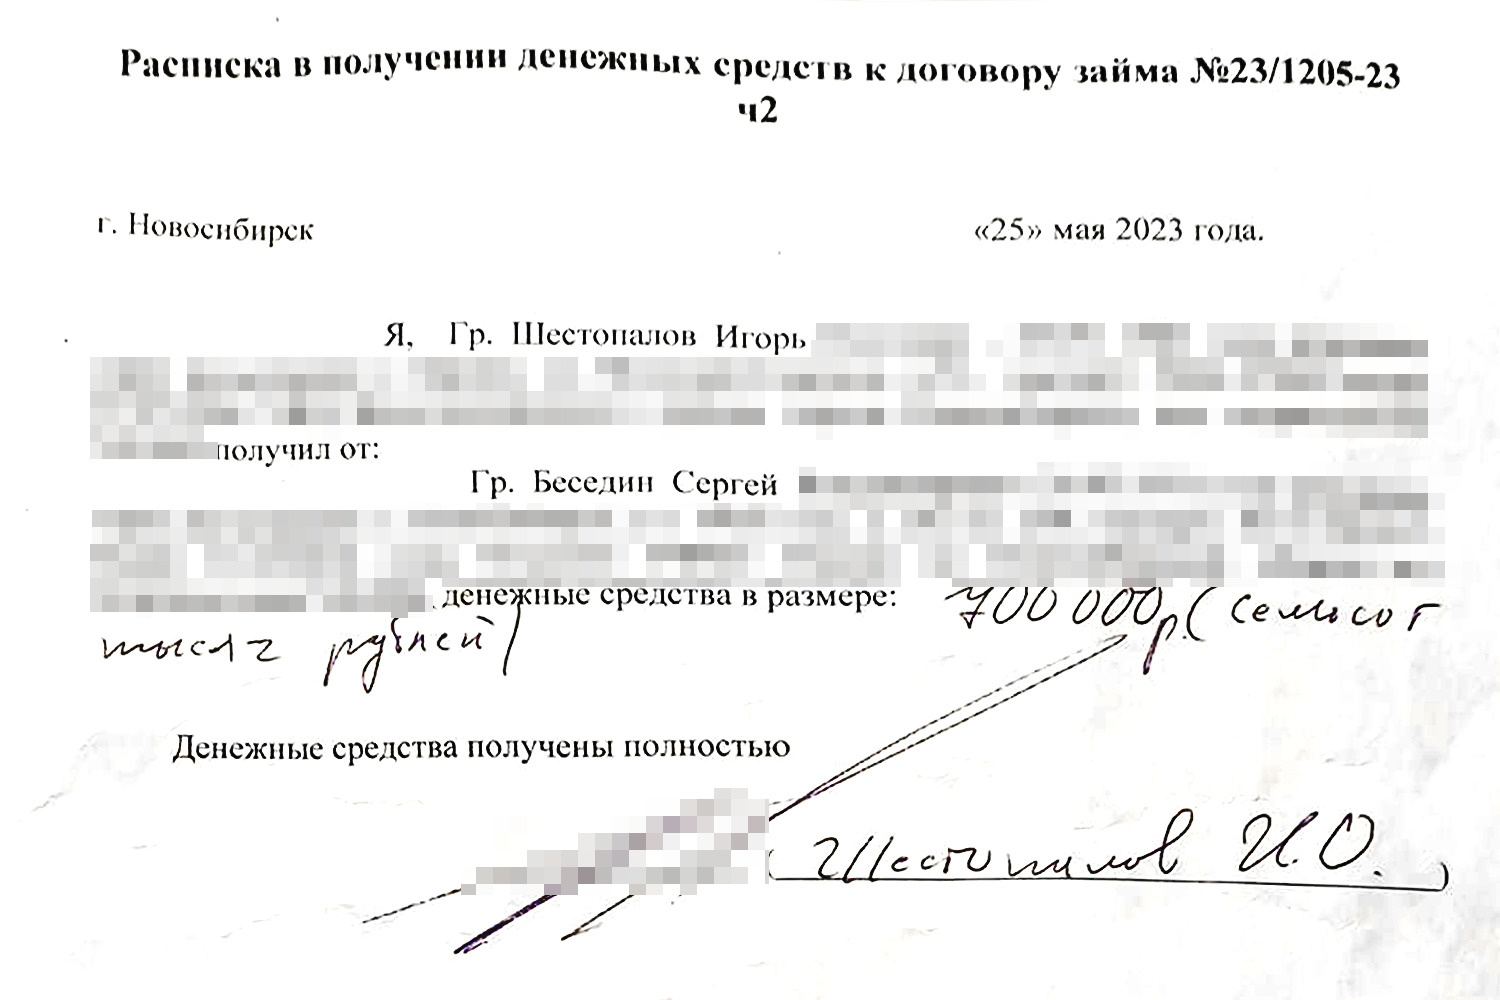 Одна из расписок, которые Игорь Шестопалов давал предпринимателю Сергею Беседину